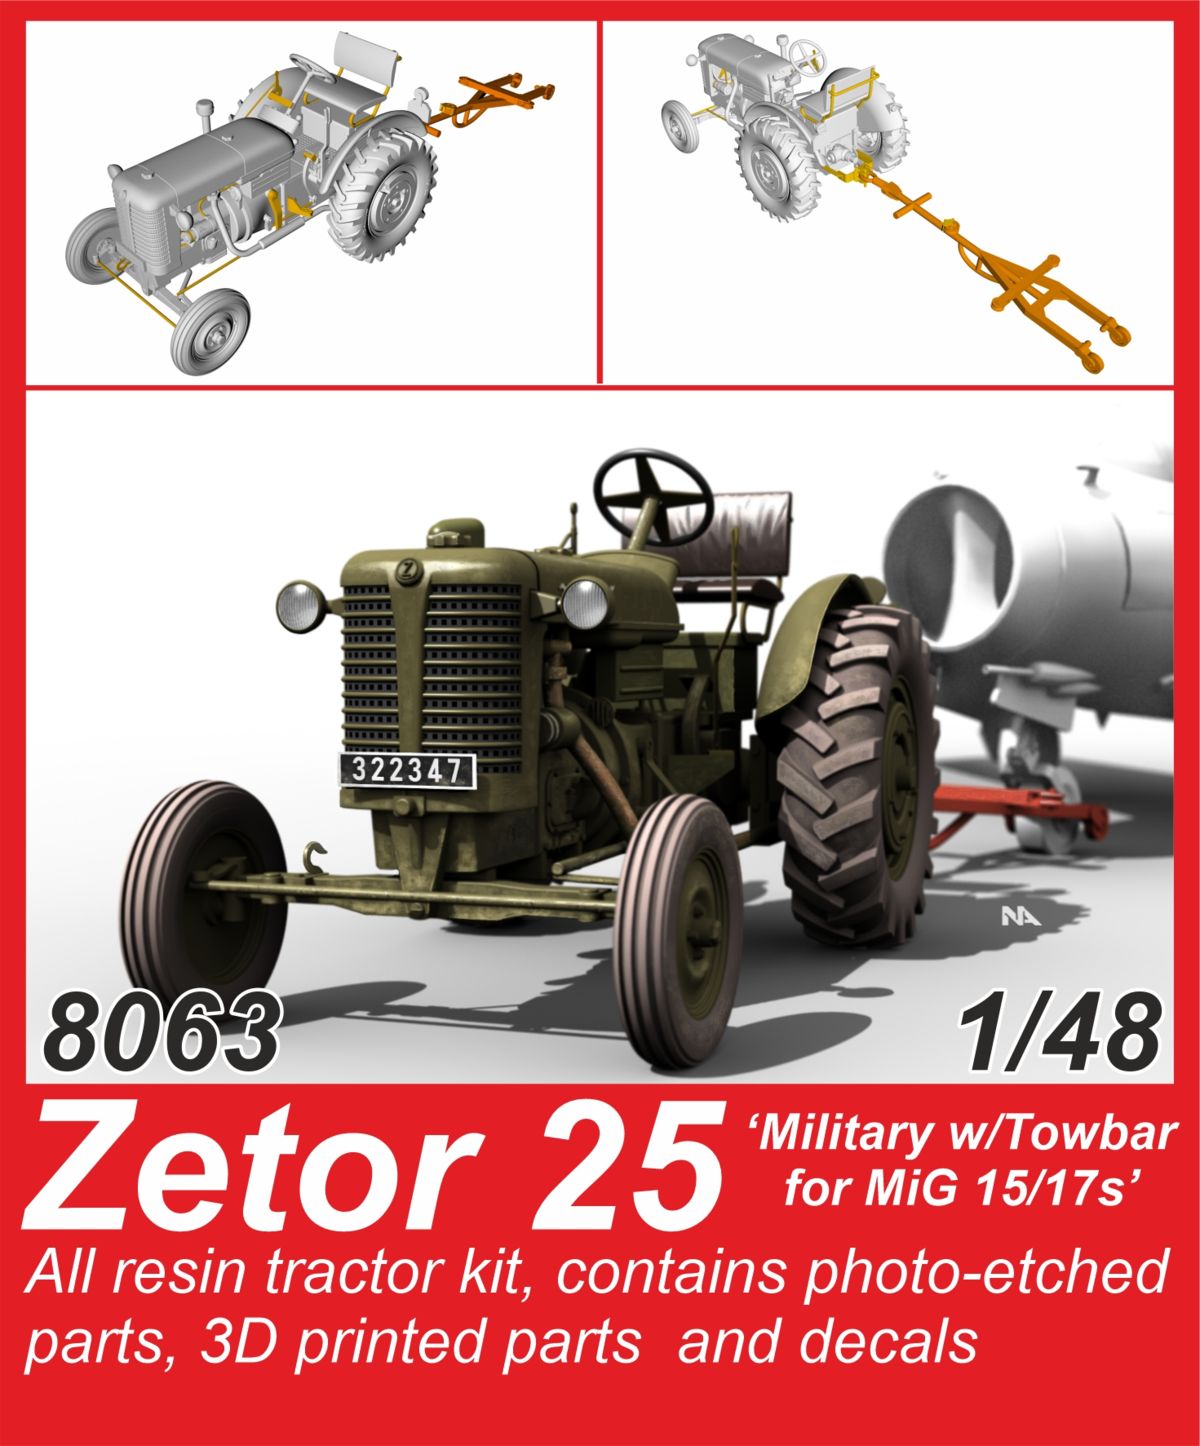 8063 Zetor 25 Military_result.jpg